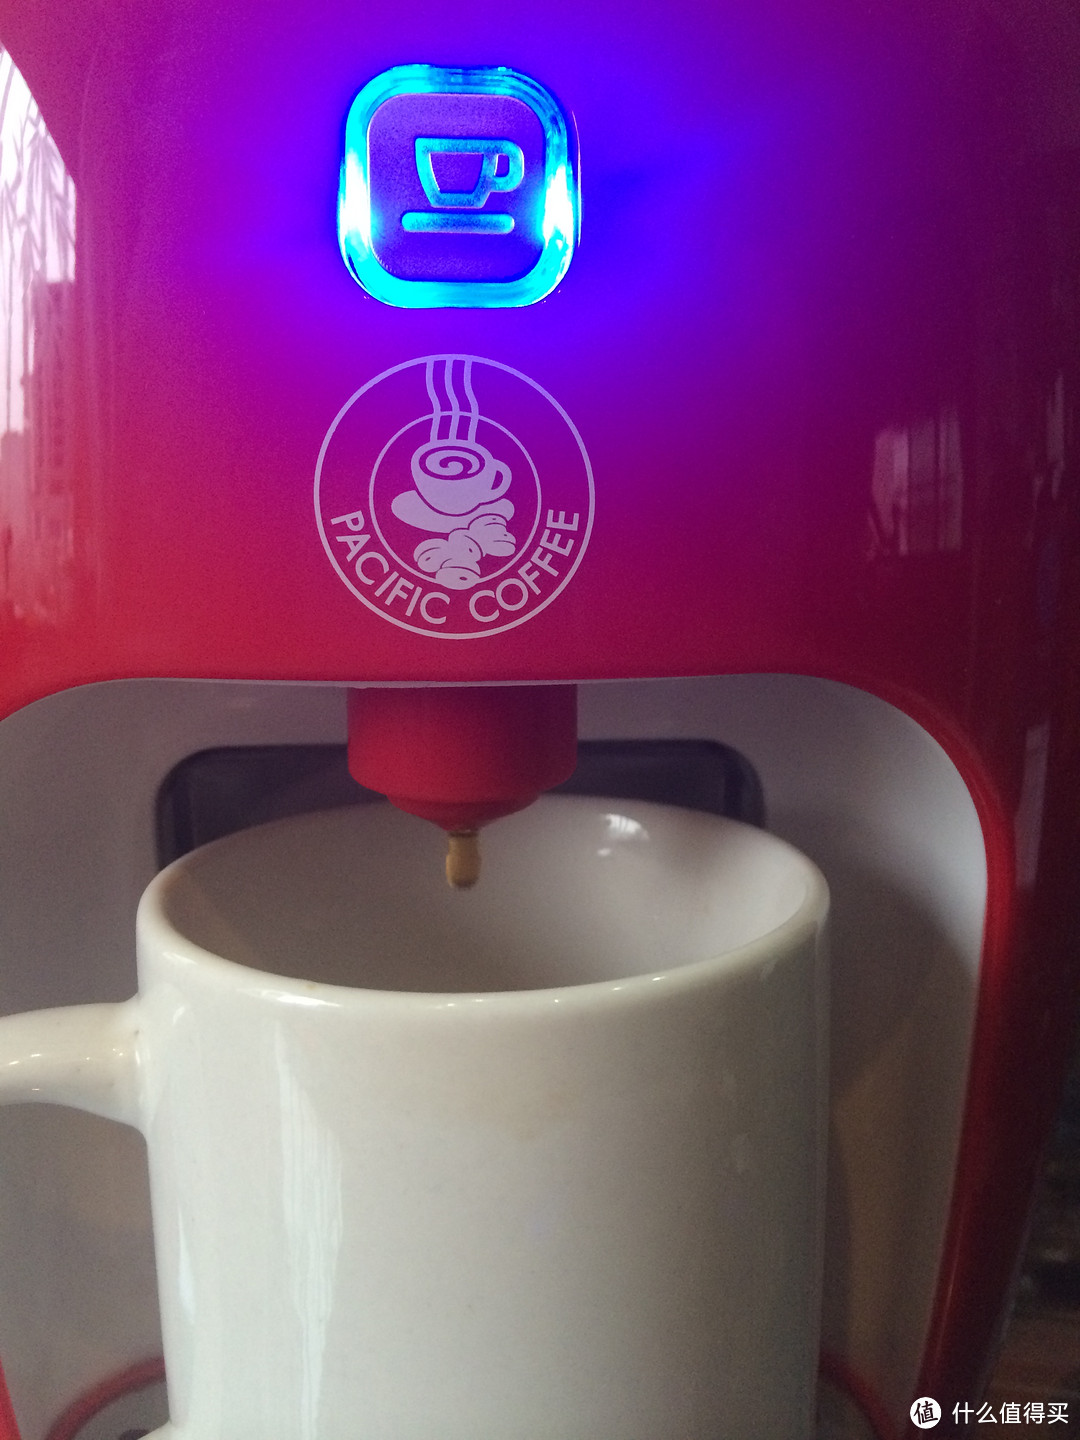 #本站首晒# Pacific Coffee 太平洋咖啡胶囊机 使用简评